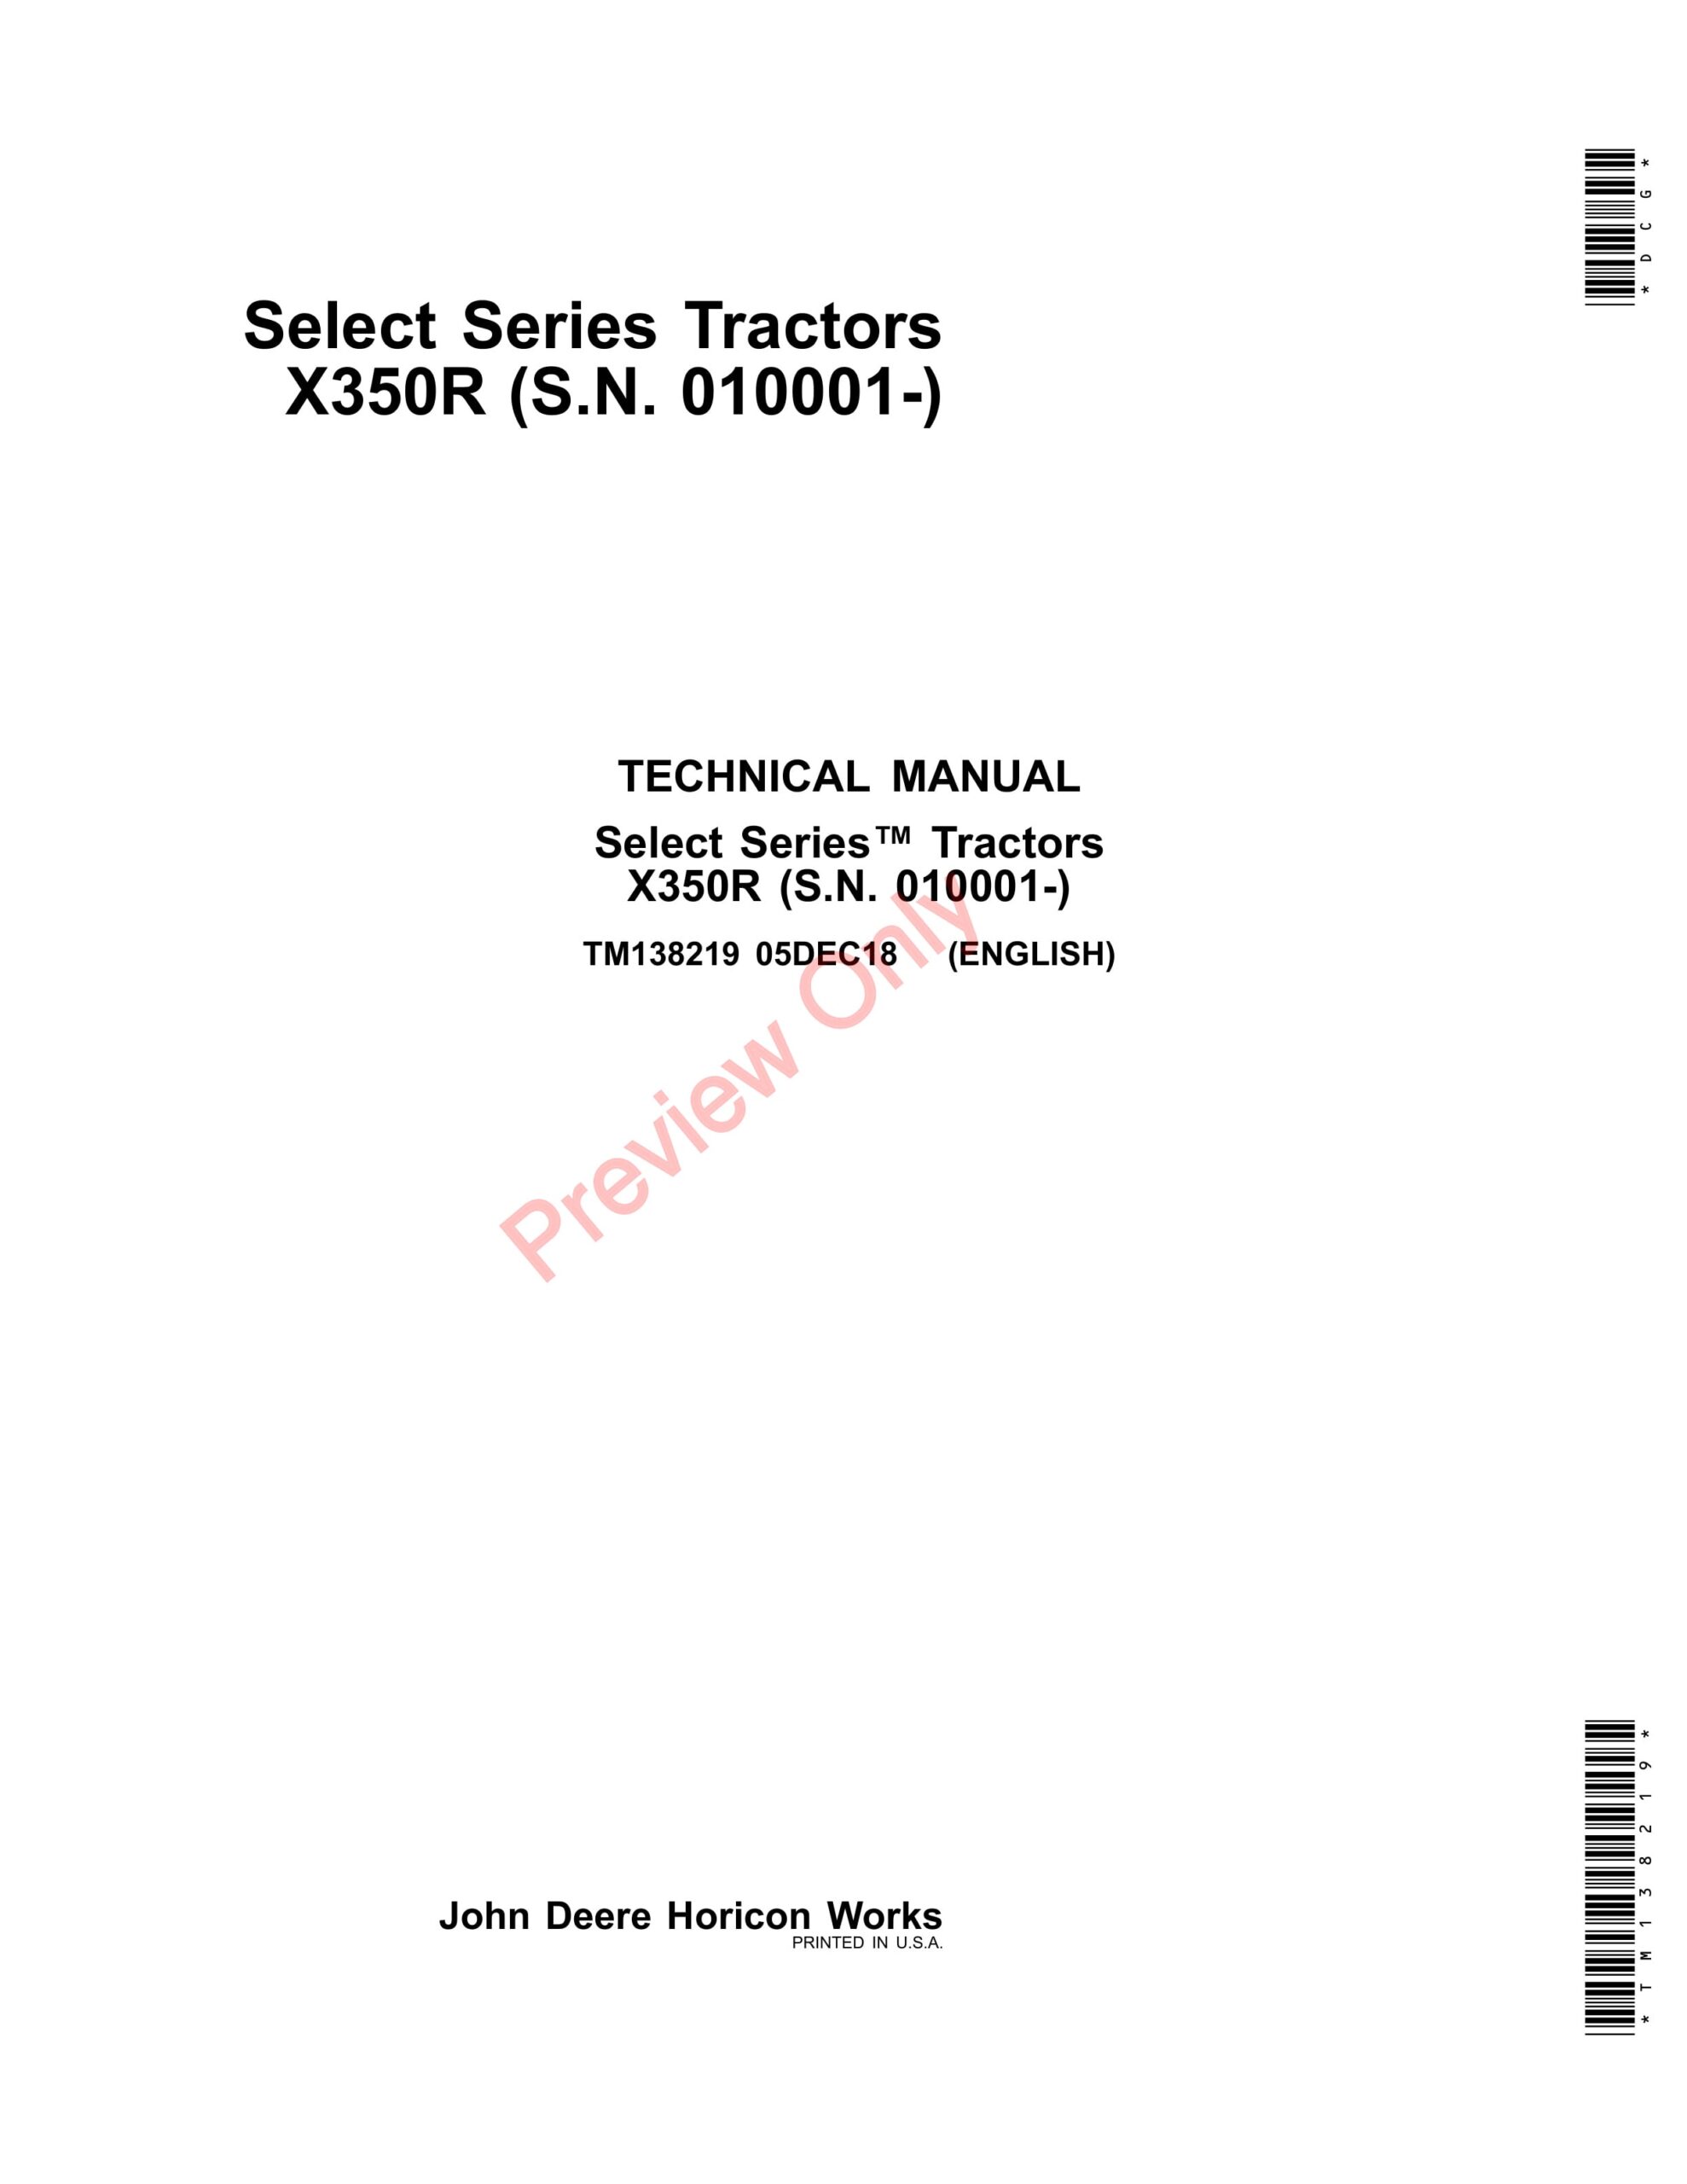 John Deere X350R Select Series Tractors Technical Manual TM138219 15DEC18-1